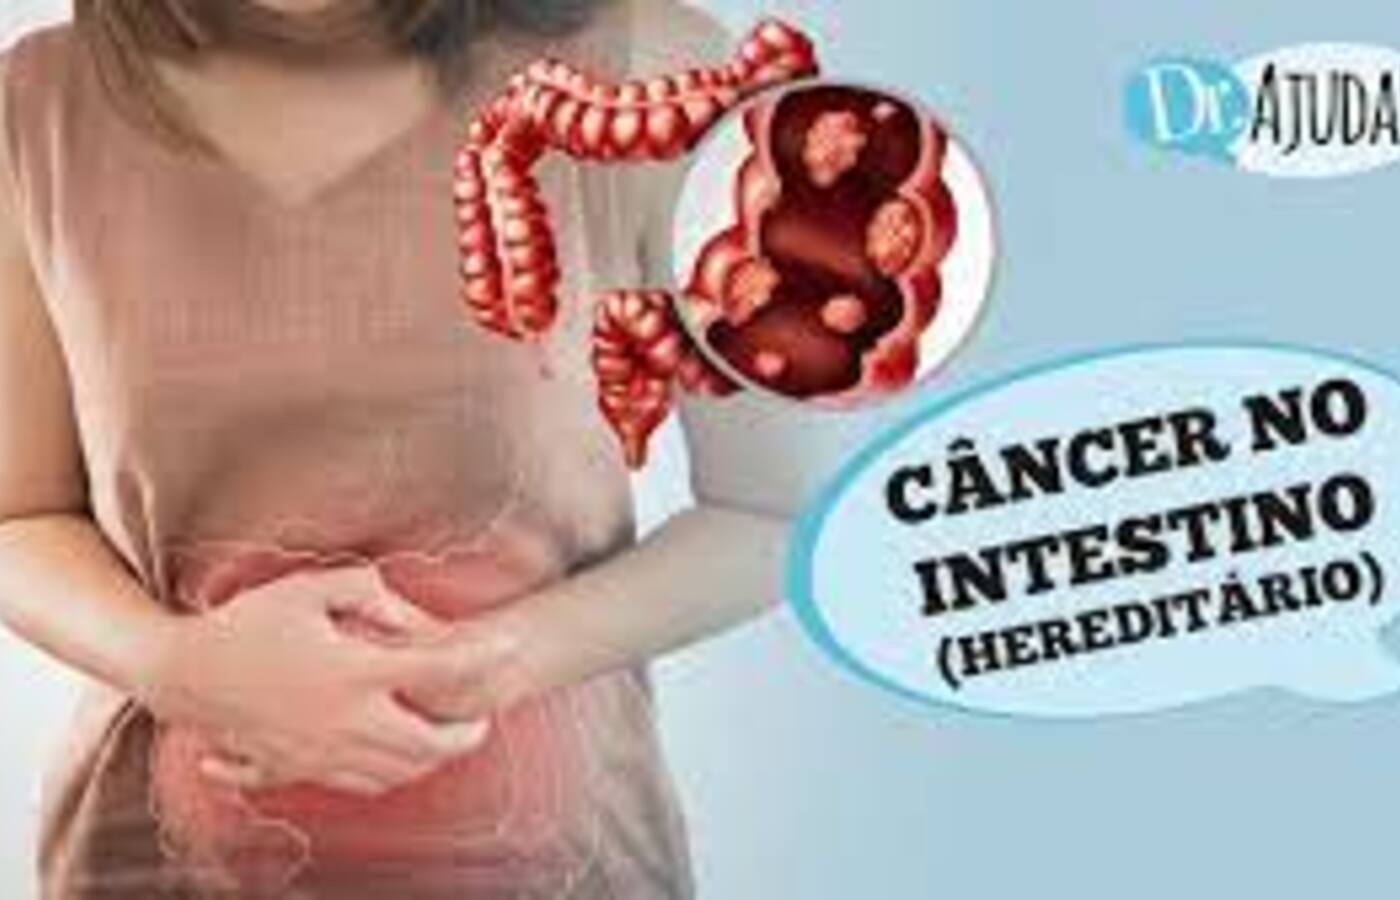 cancer-de-intestino-pode-ser-hereditario?